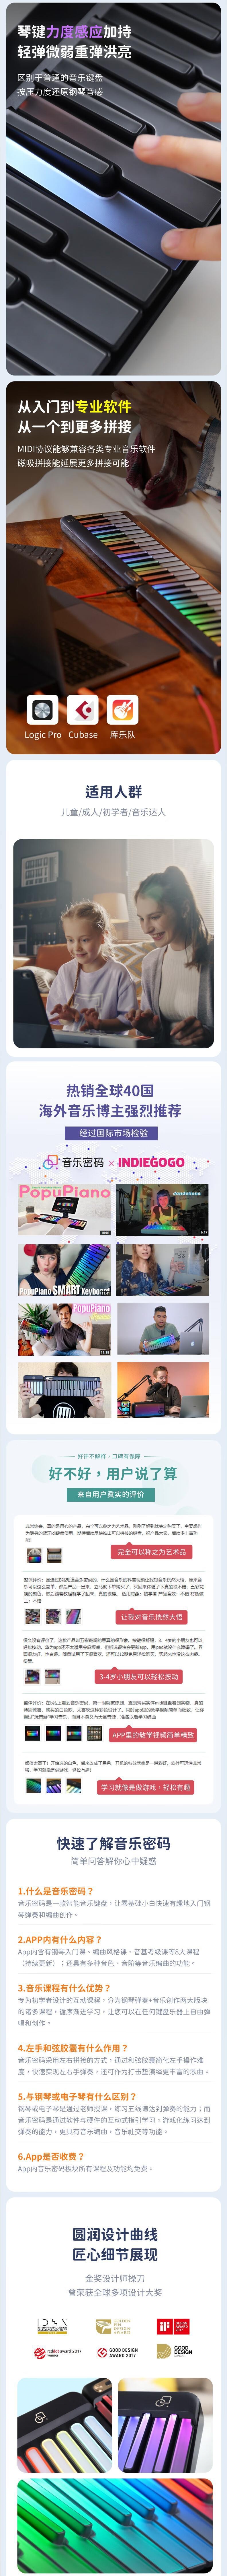 PopuPiano音乐密码智能便携式学习电子琴钢琴键盘小米生态链 五光十色的白 光遇琴包款【加拿大直邮】